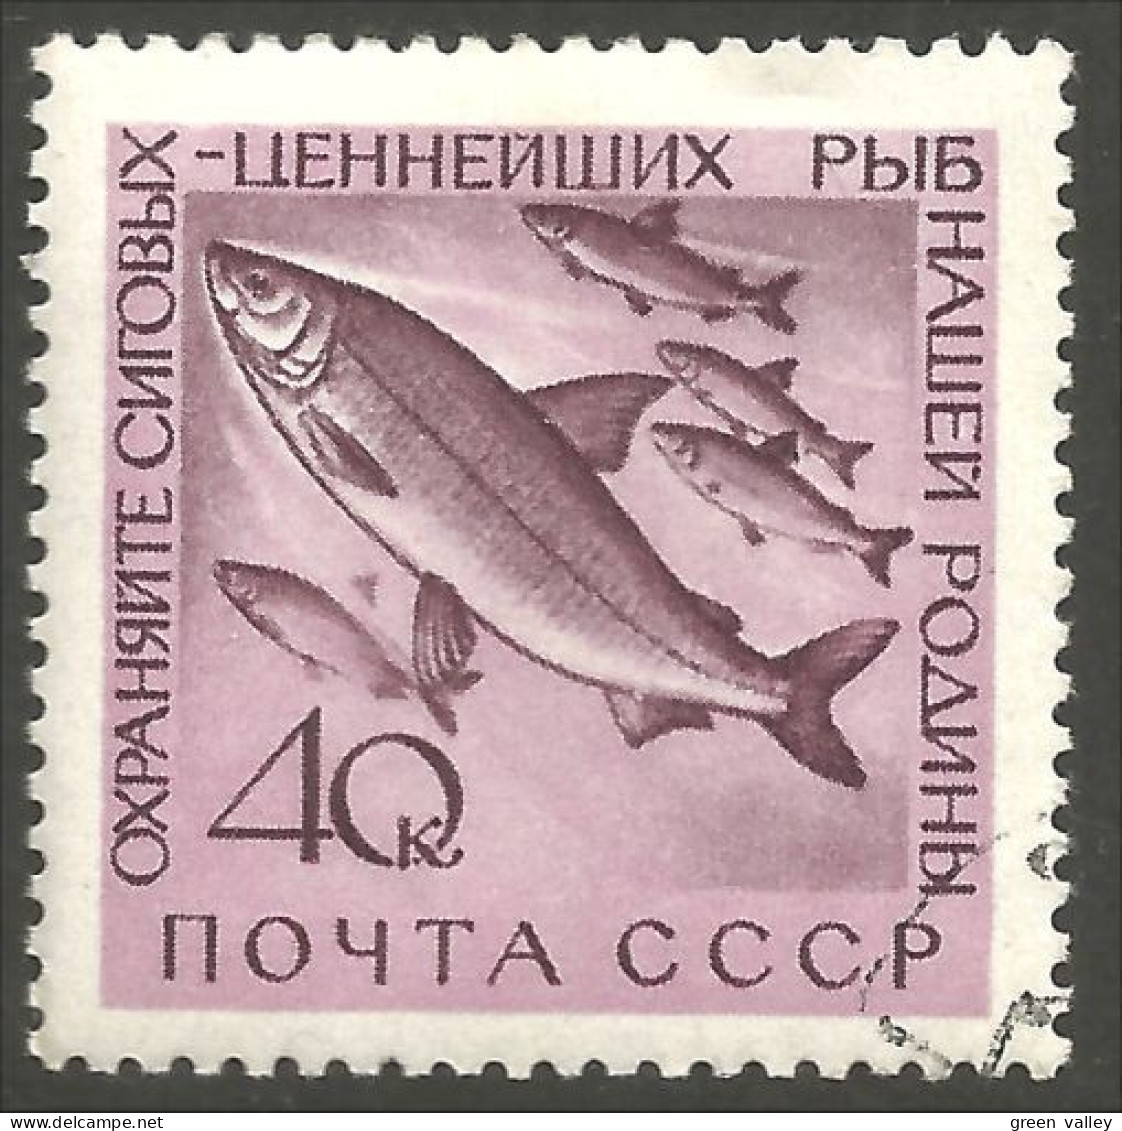 AL-25 Russia Poisson Saumon Salmon Fische Fish Piscis Pesci Vis - Food